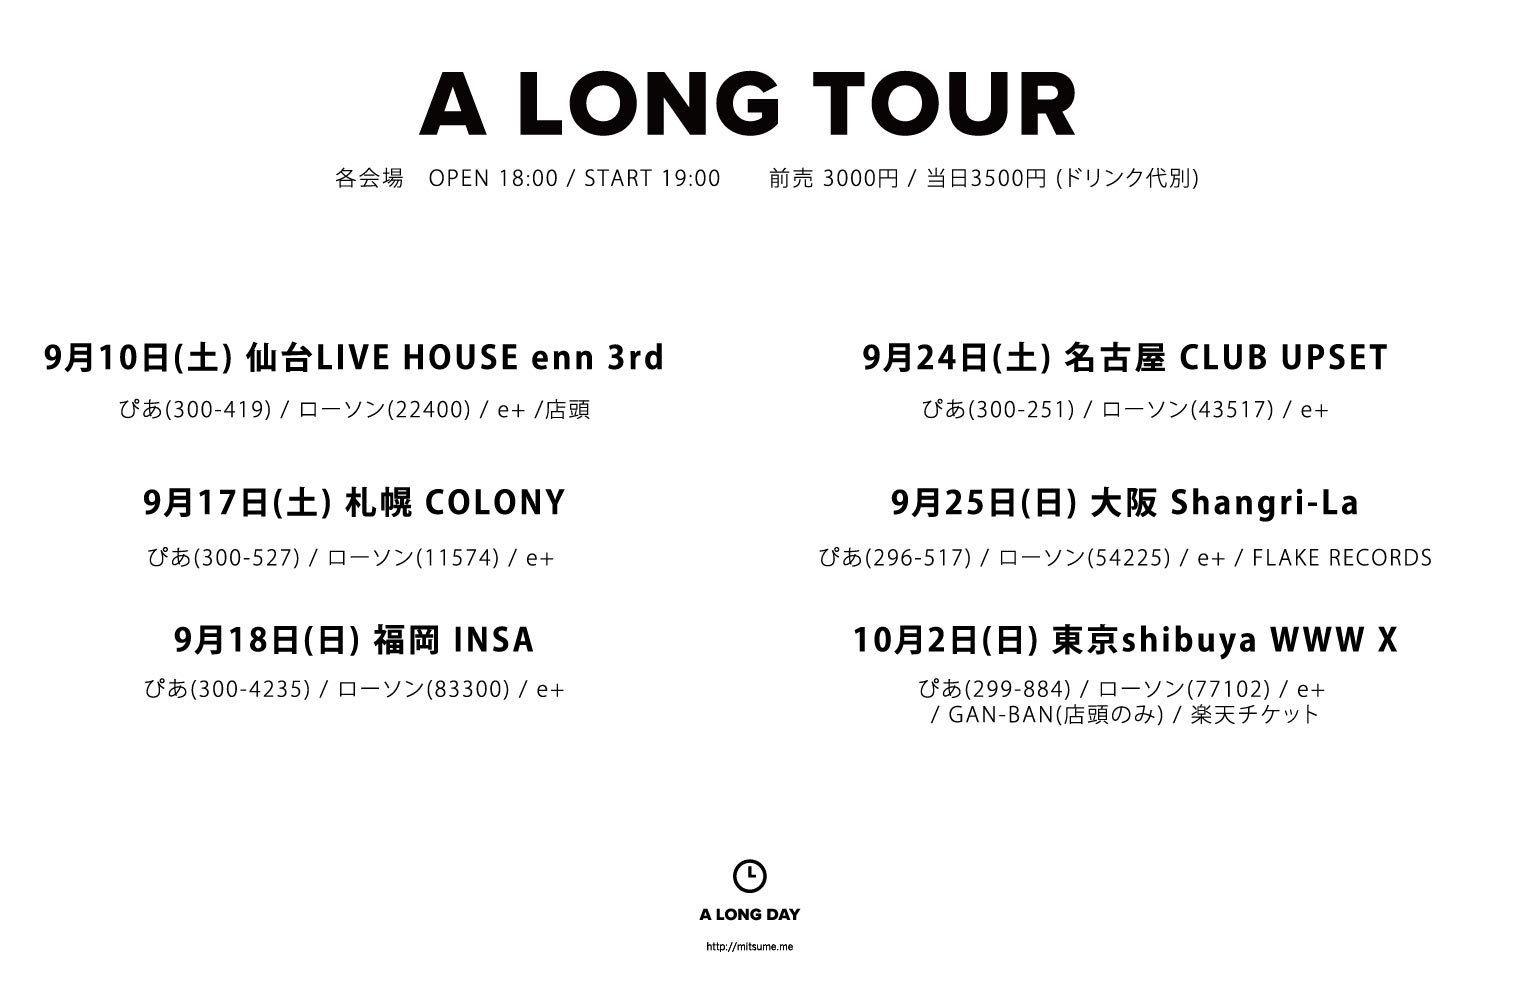 「A Long Tour」の詳細が発表されました。